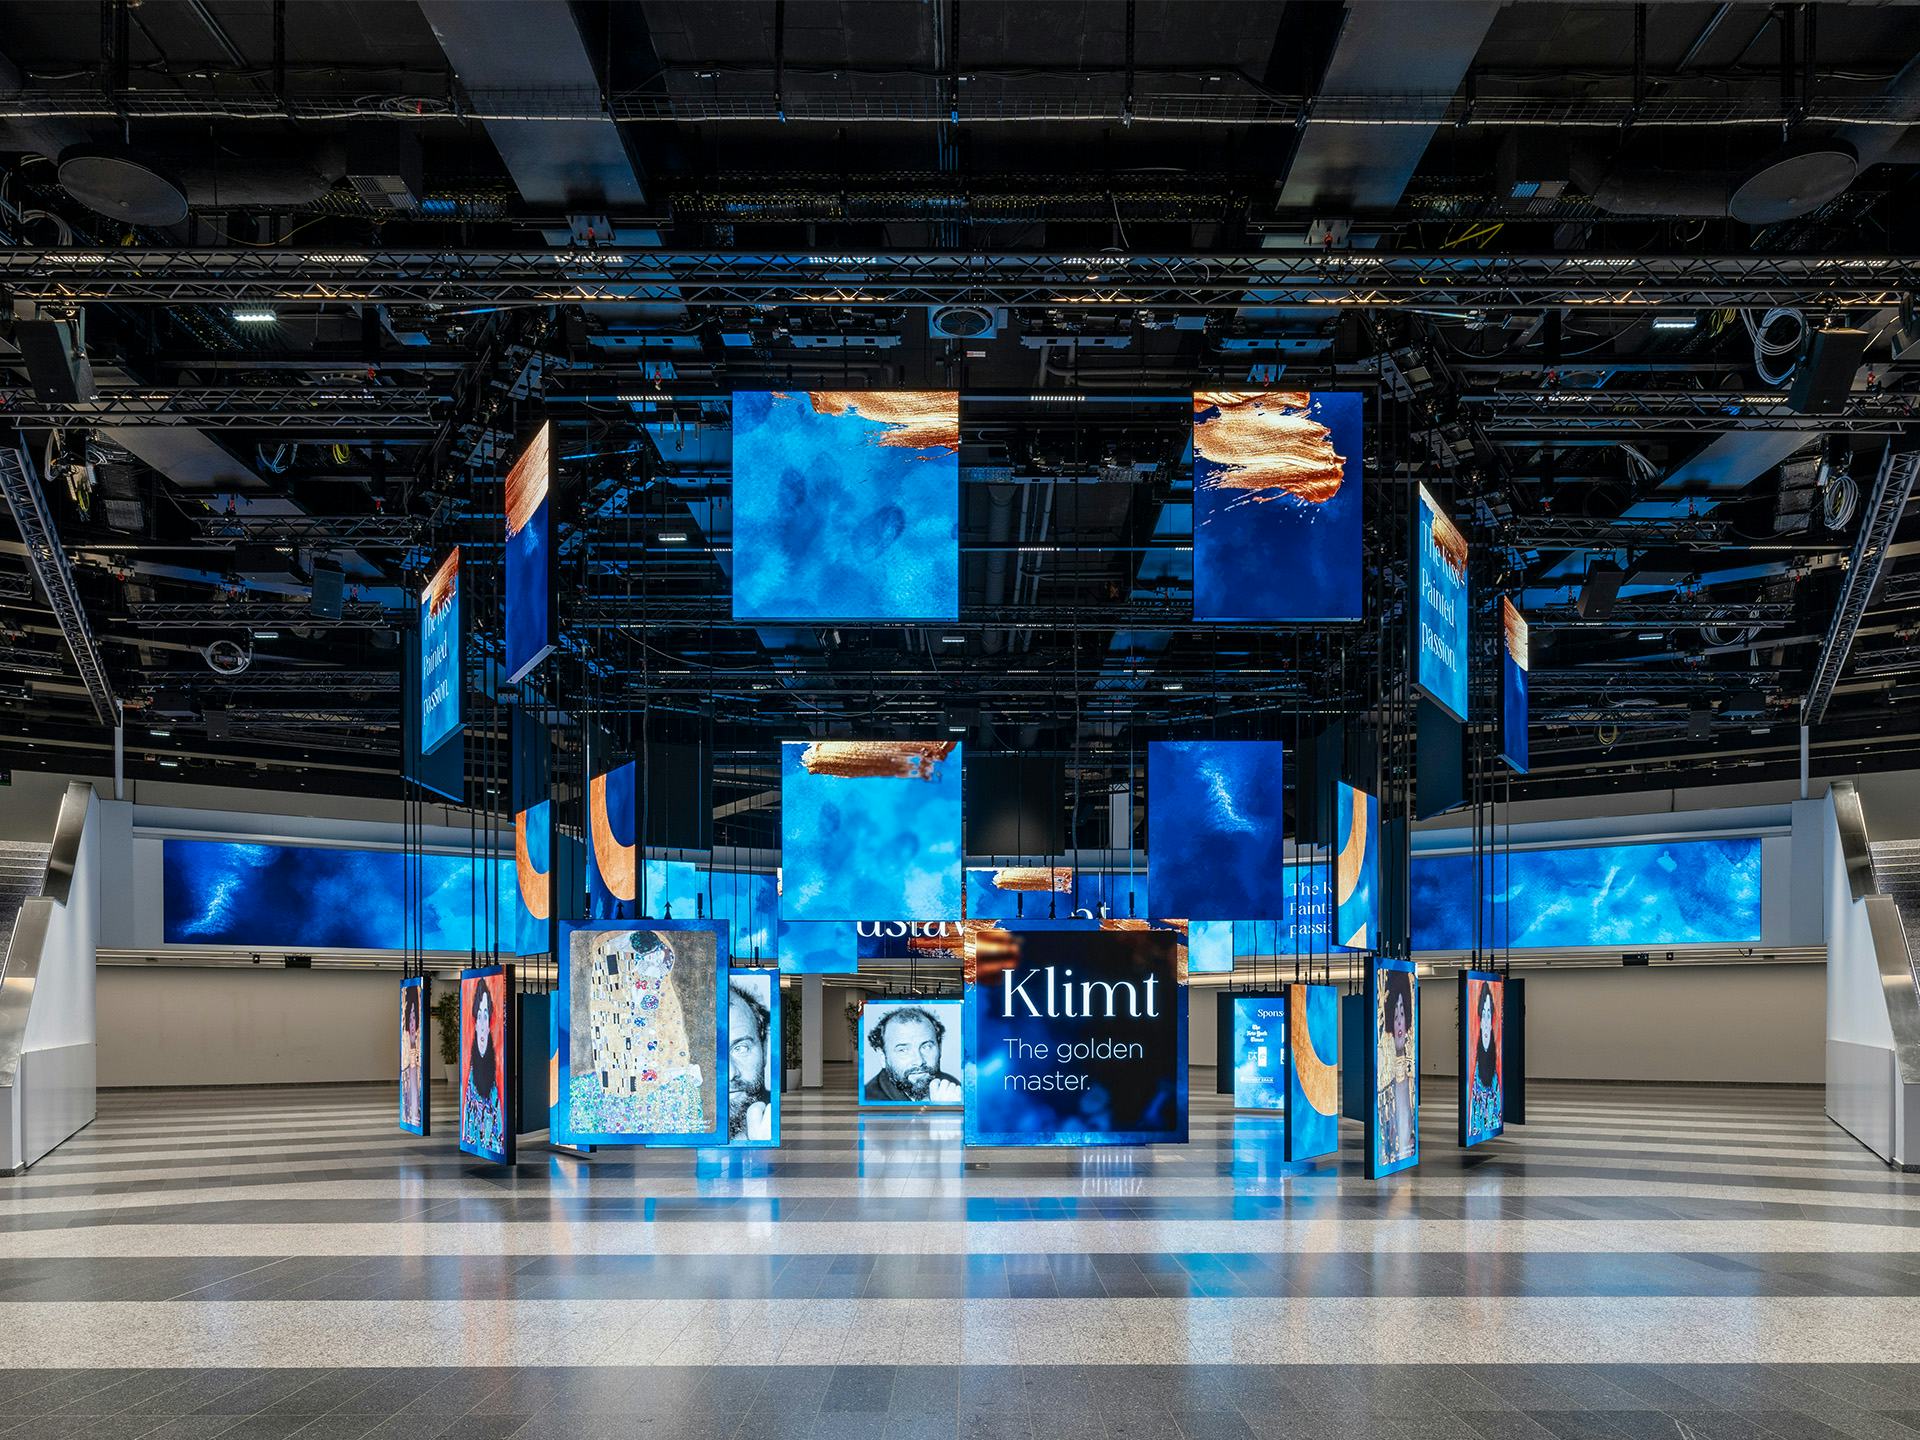 Foto: blaue beleuchtete Paneele mit Klimt Bildern in einer Halle